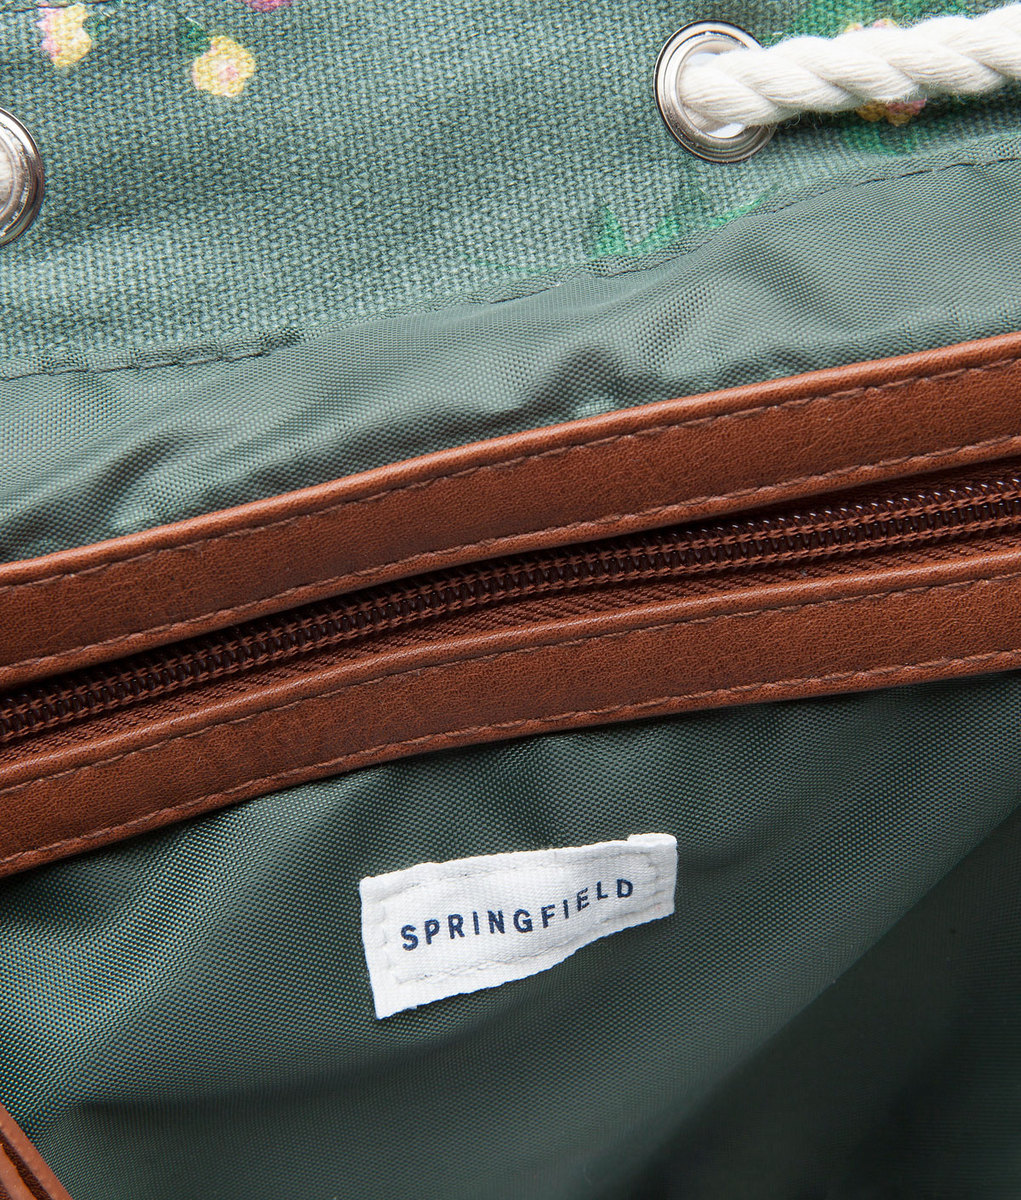 Springfield divatos virágmintás hátizsák 2015.02.24 #76347 fotója